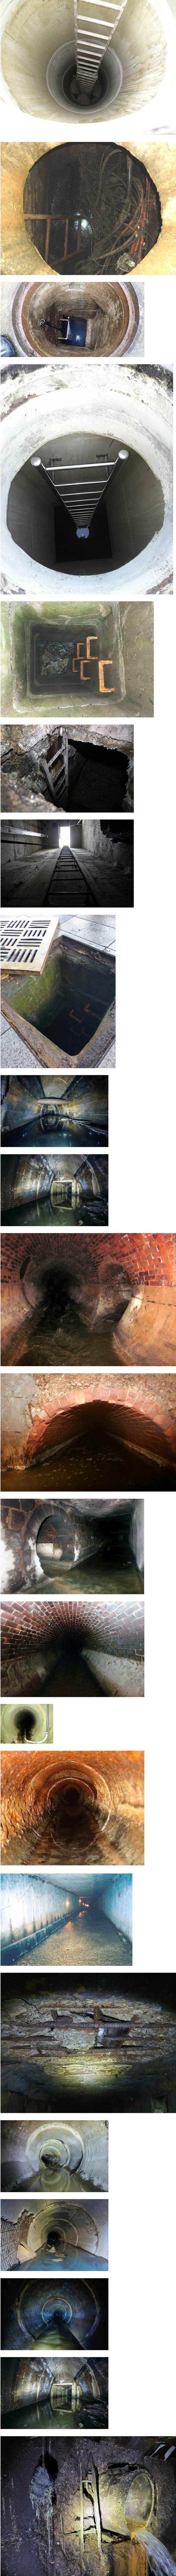 맨홀 하수구 내부 구조